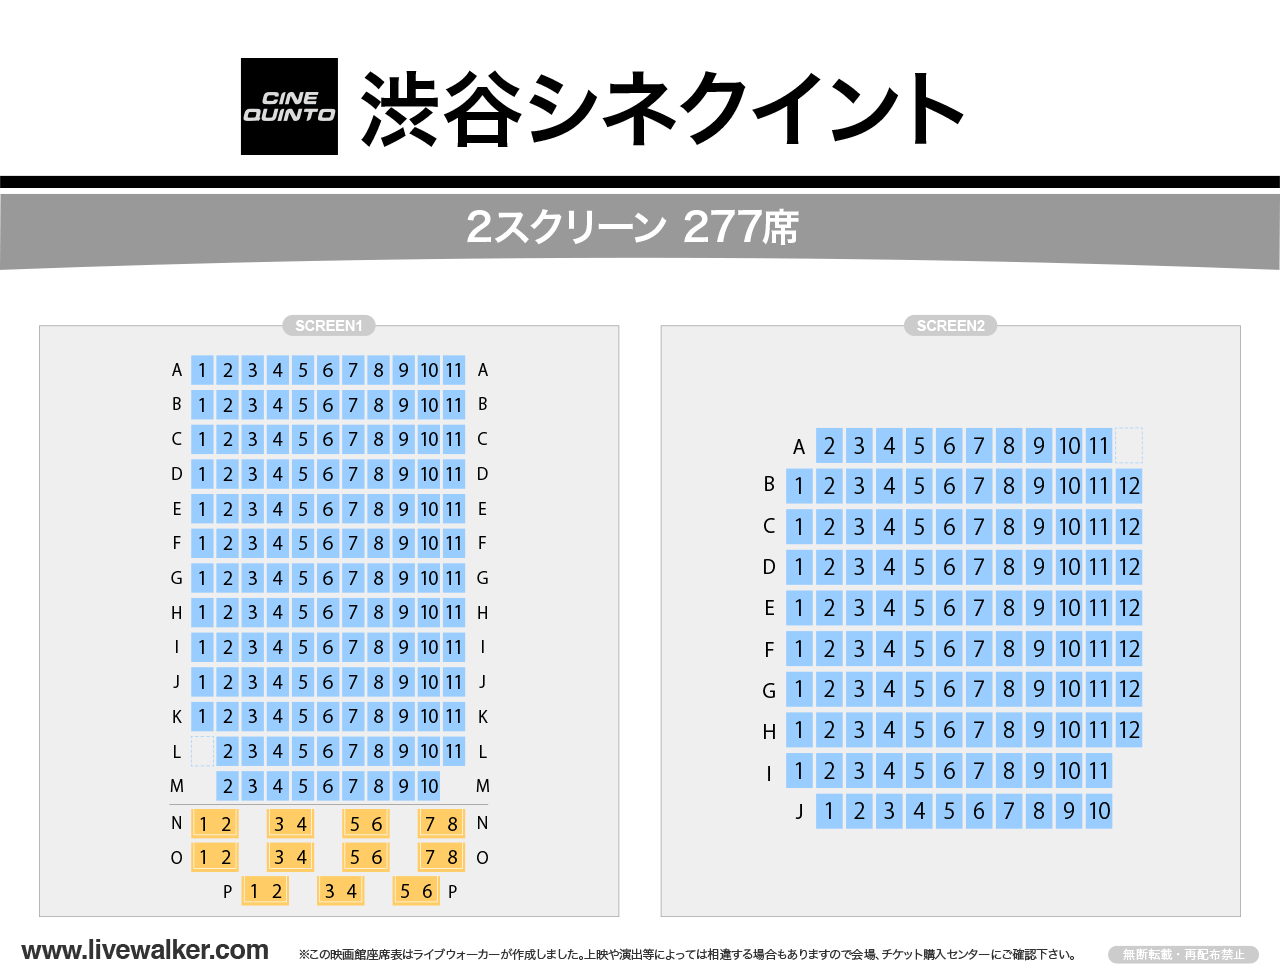 渋谷シネクイントスクリーンの座席表